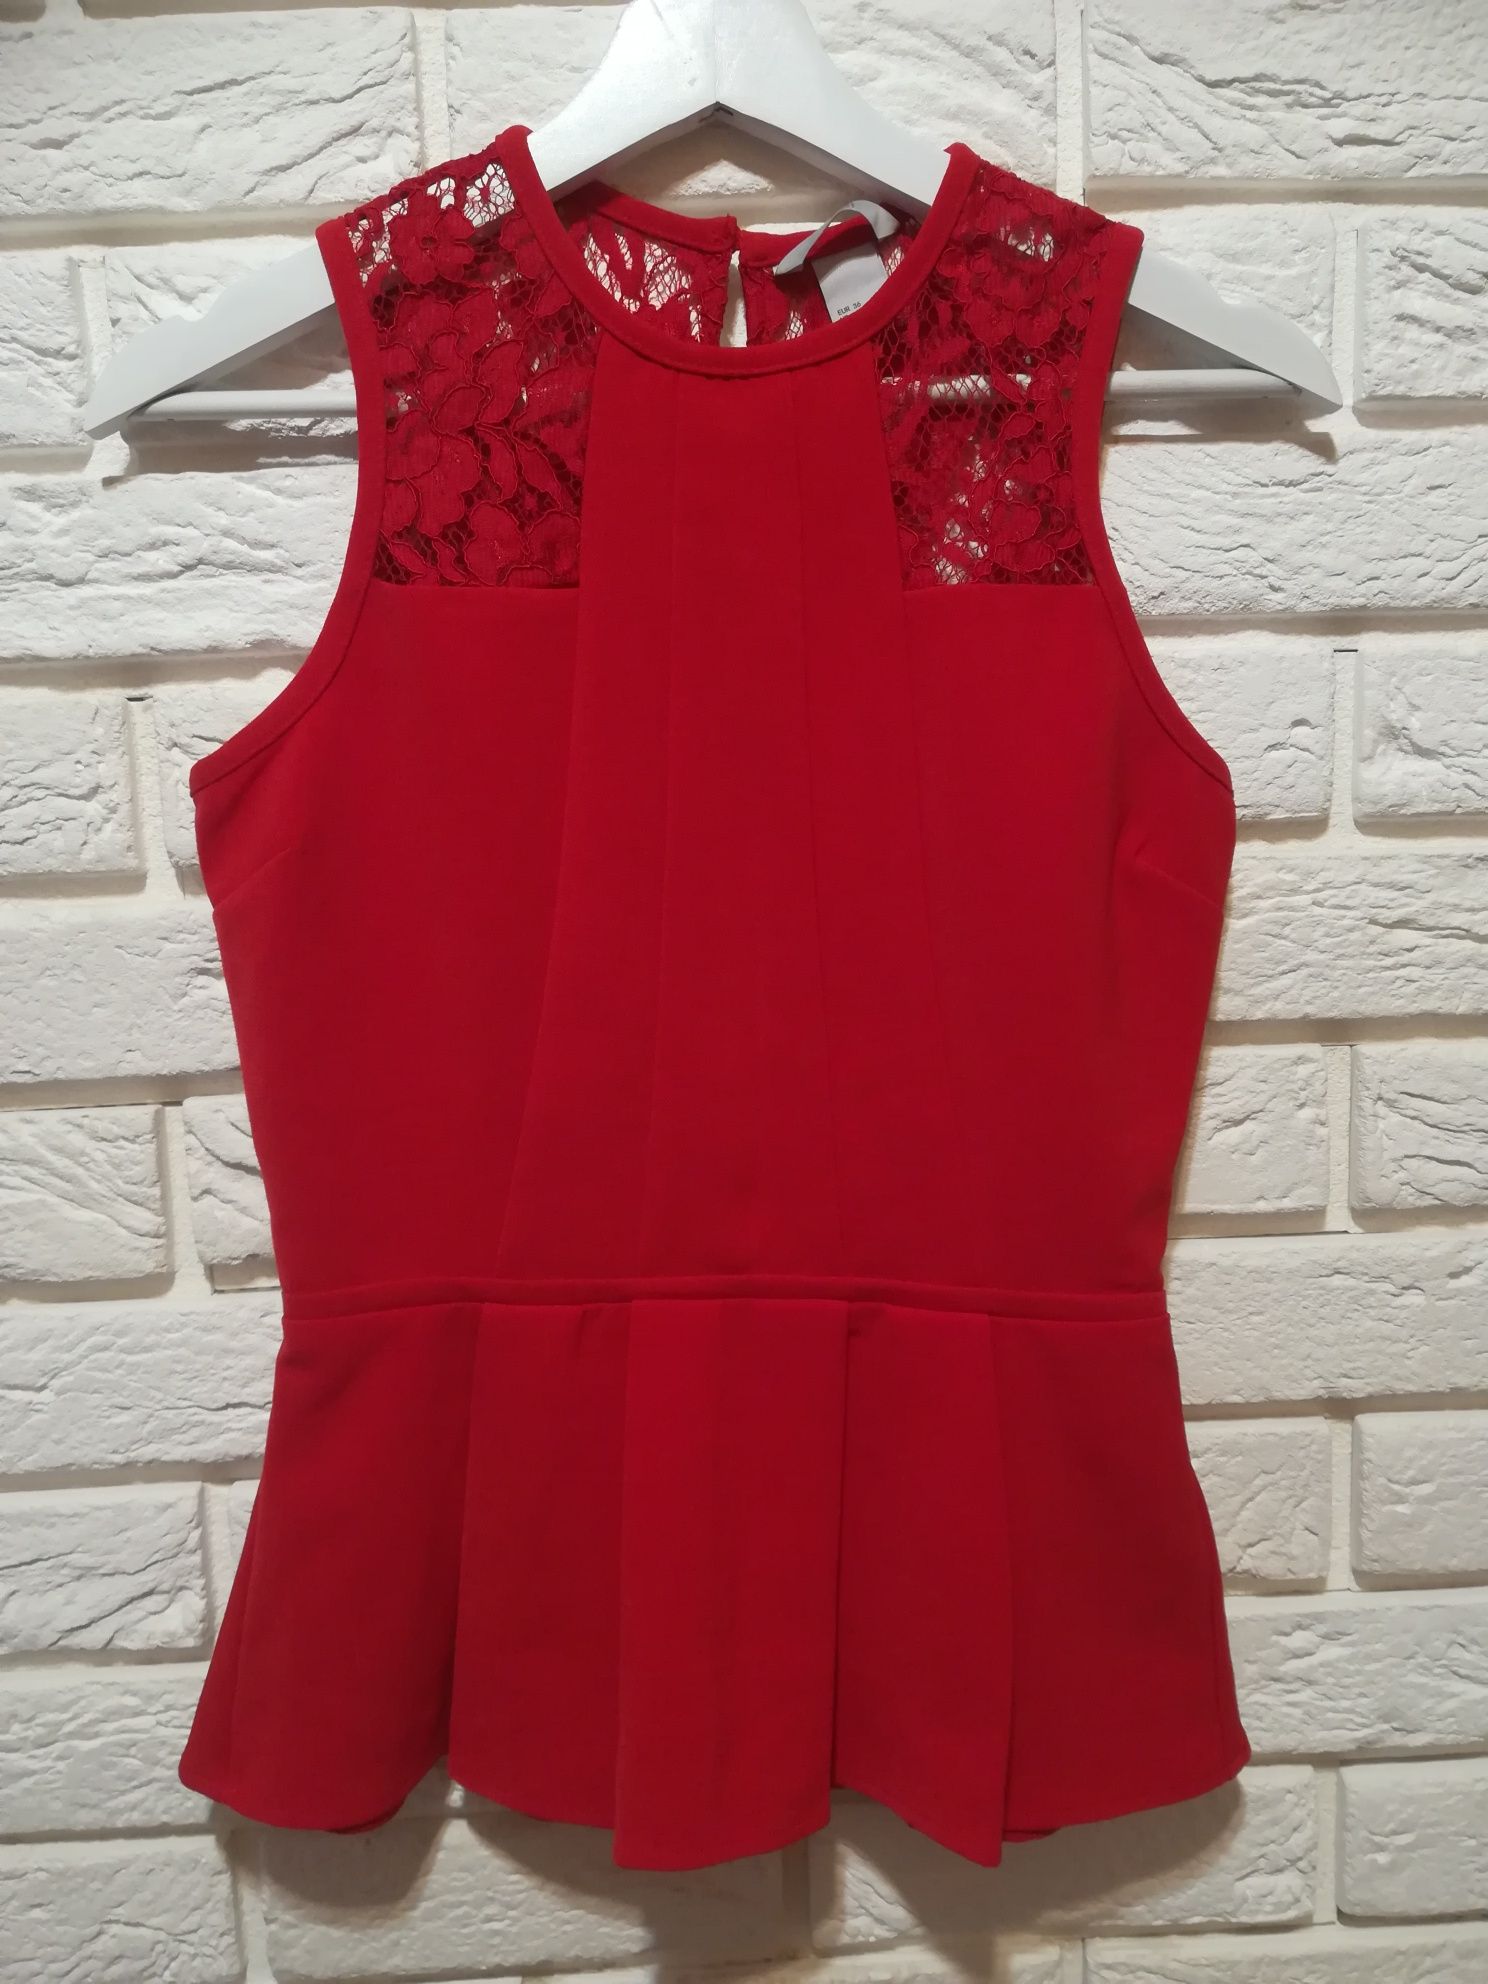 Bluzka elegancka /top /falbanka/baskinka, czerwona H&M rozmiar 36